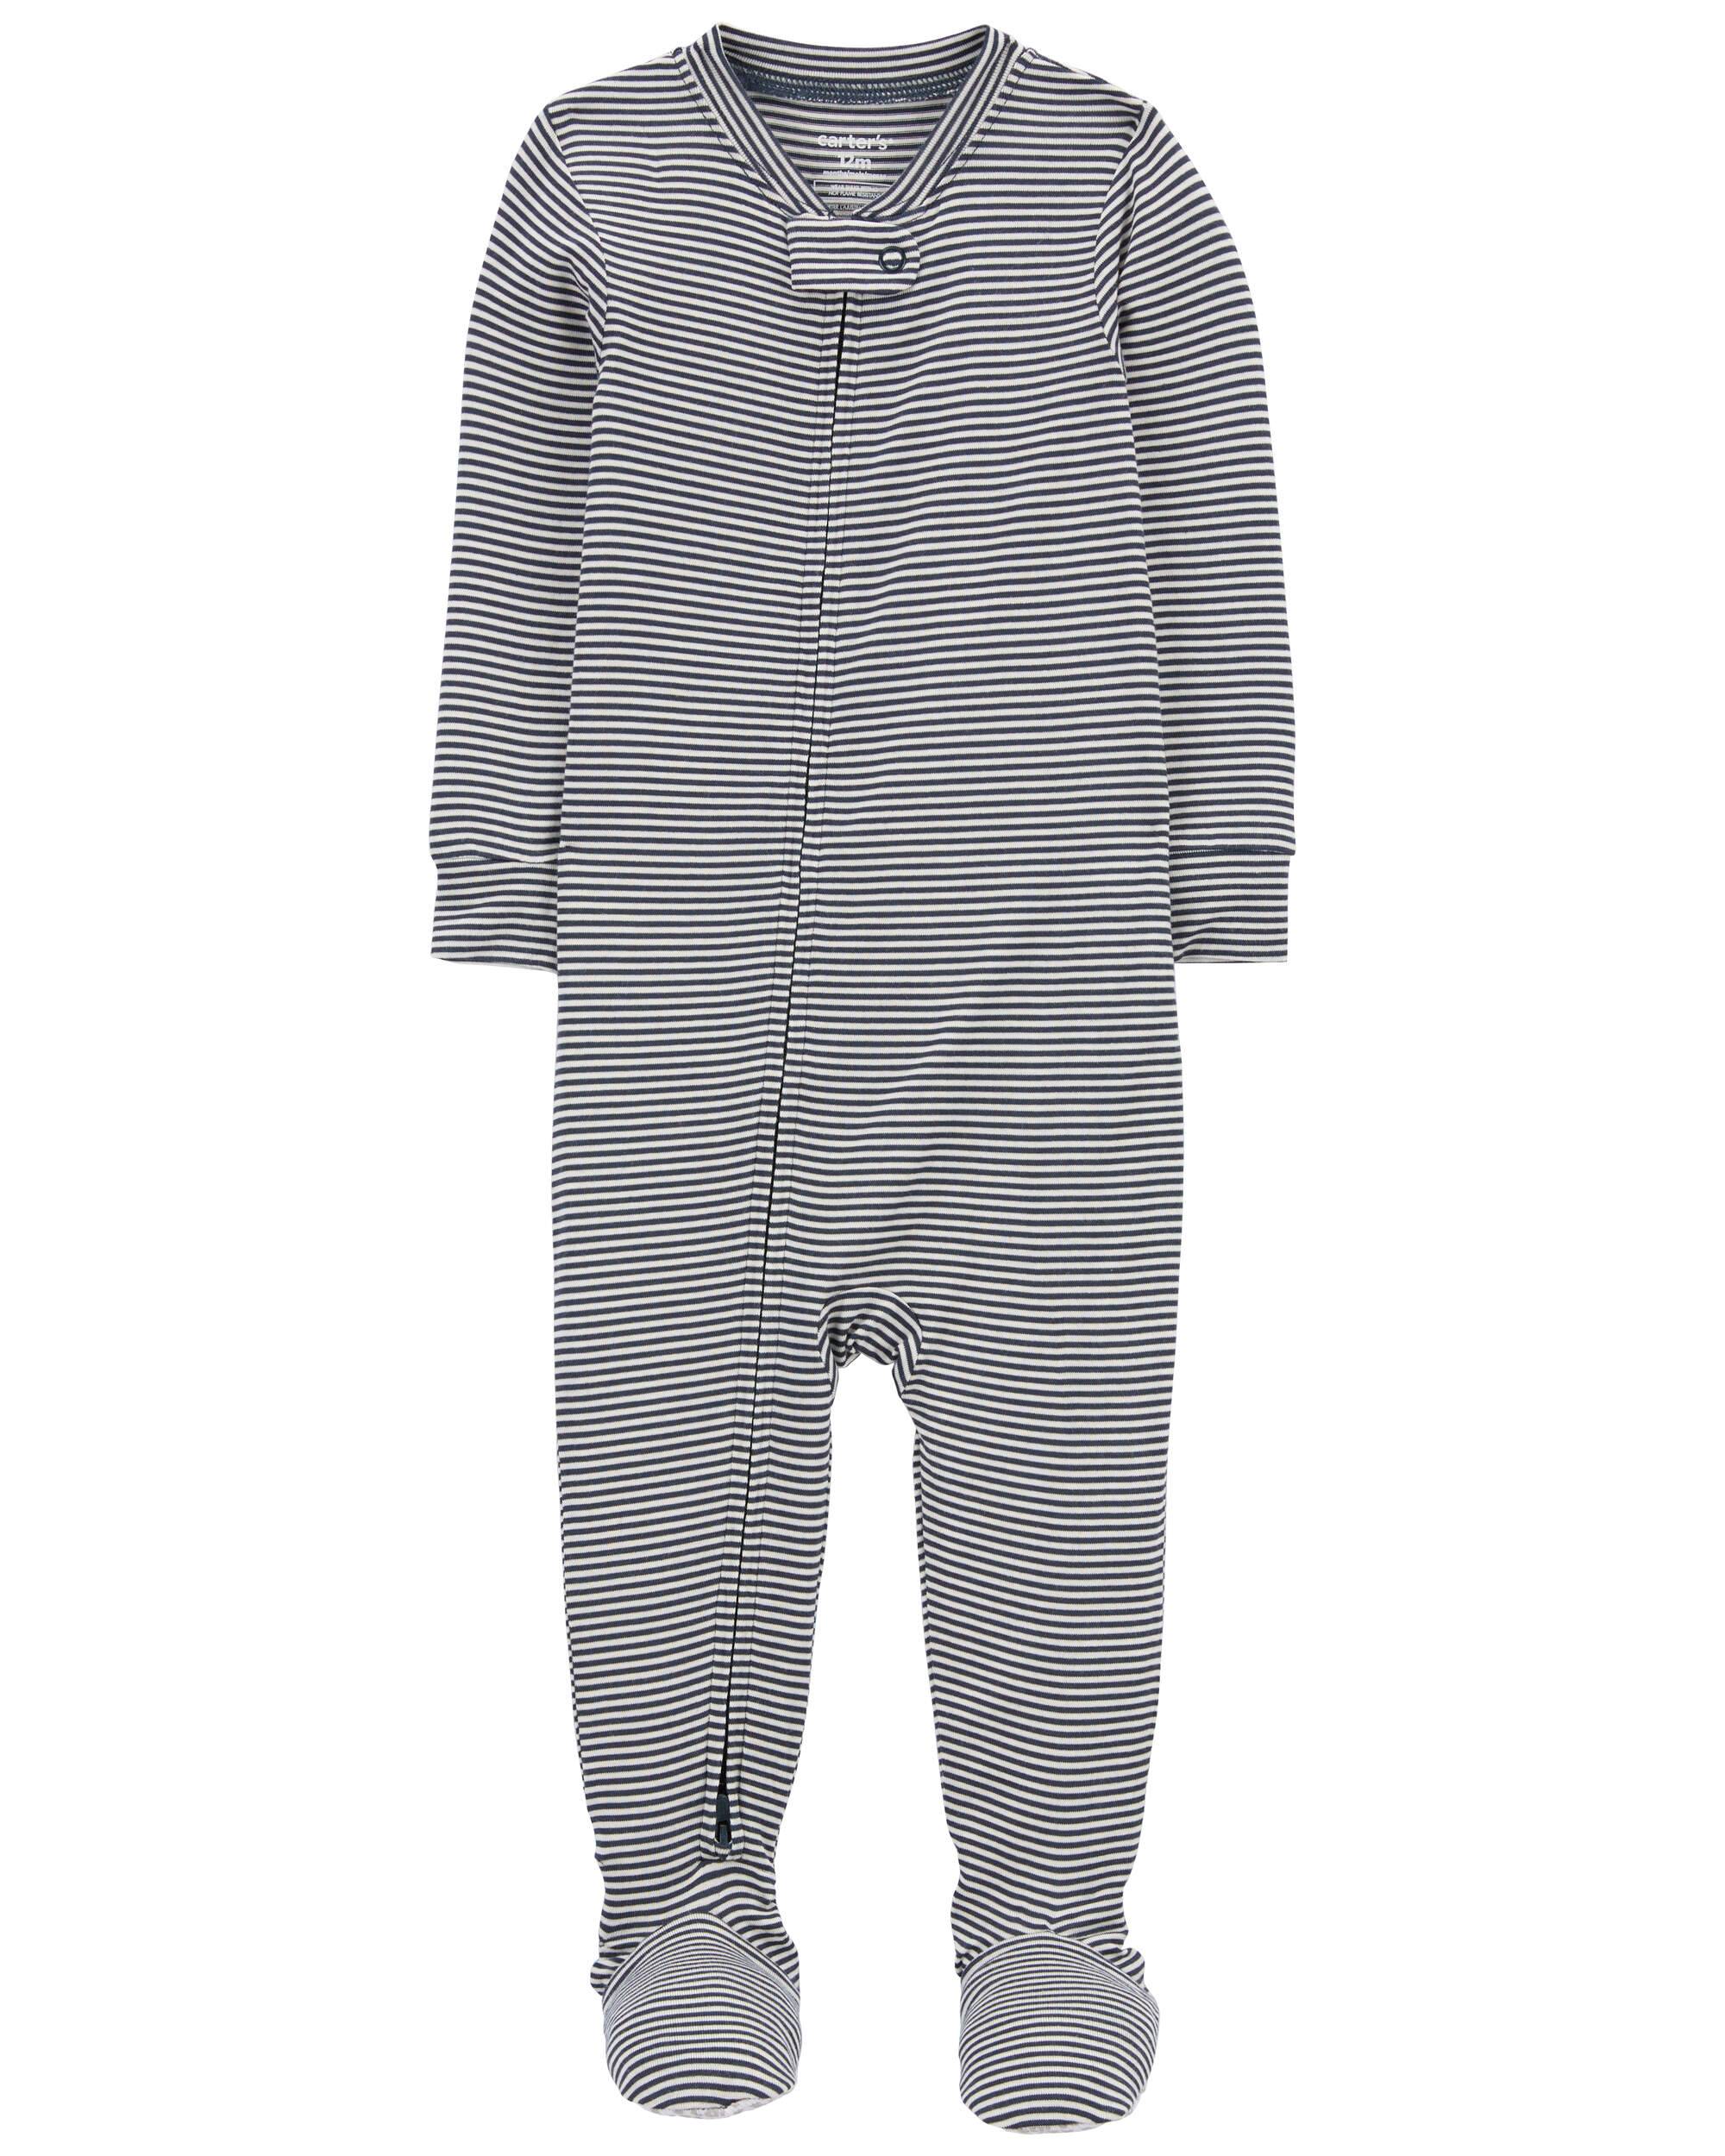 1-Piece Striped PurelySoft Footie Pyjamas